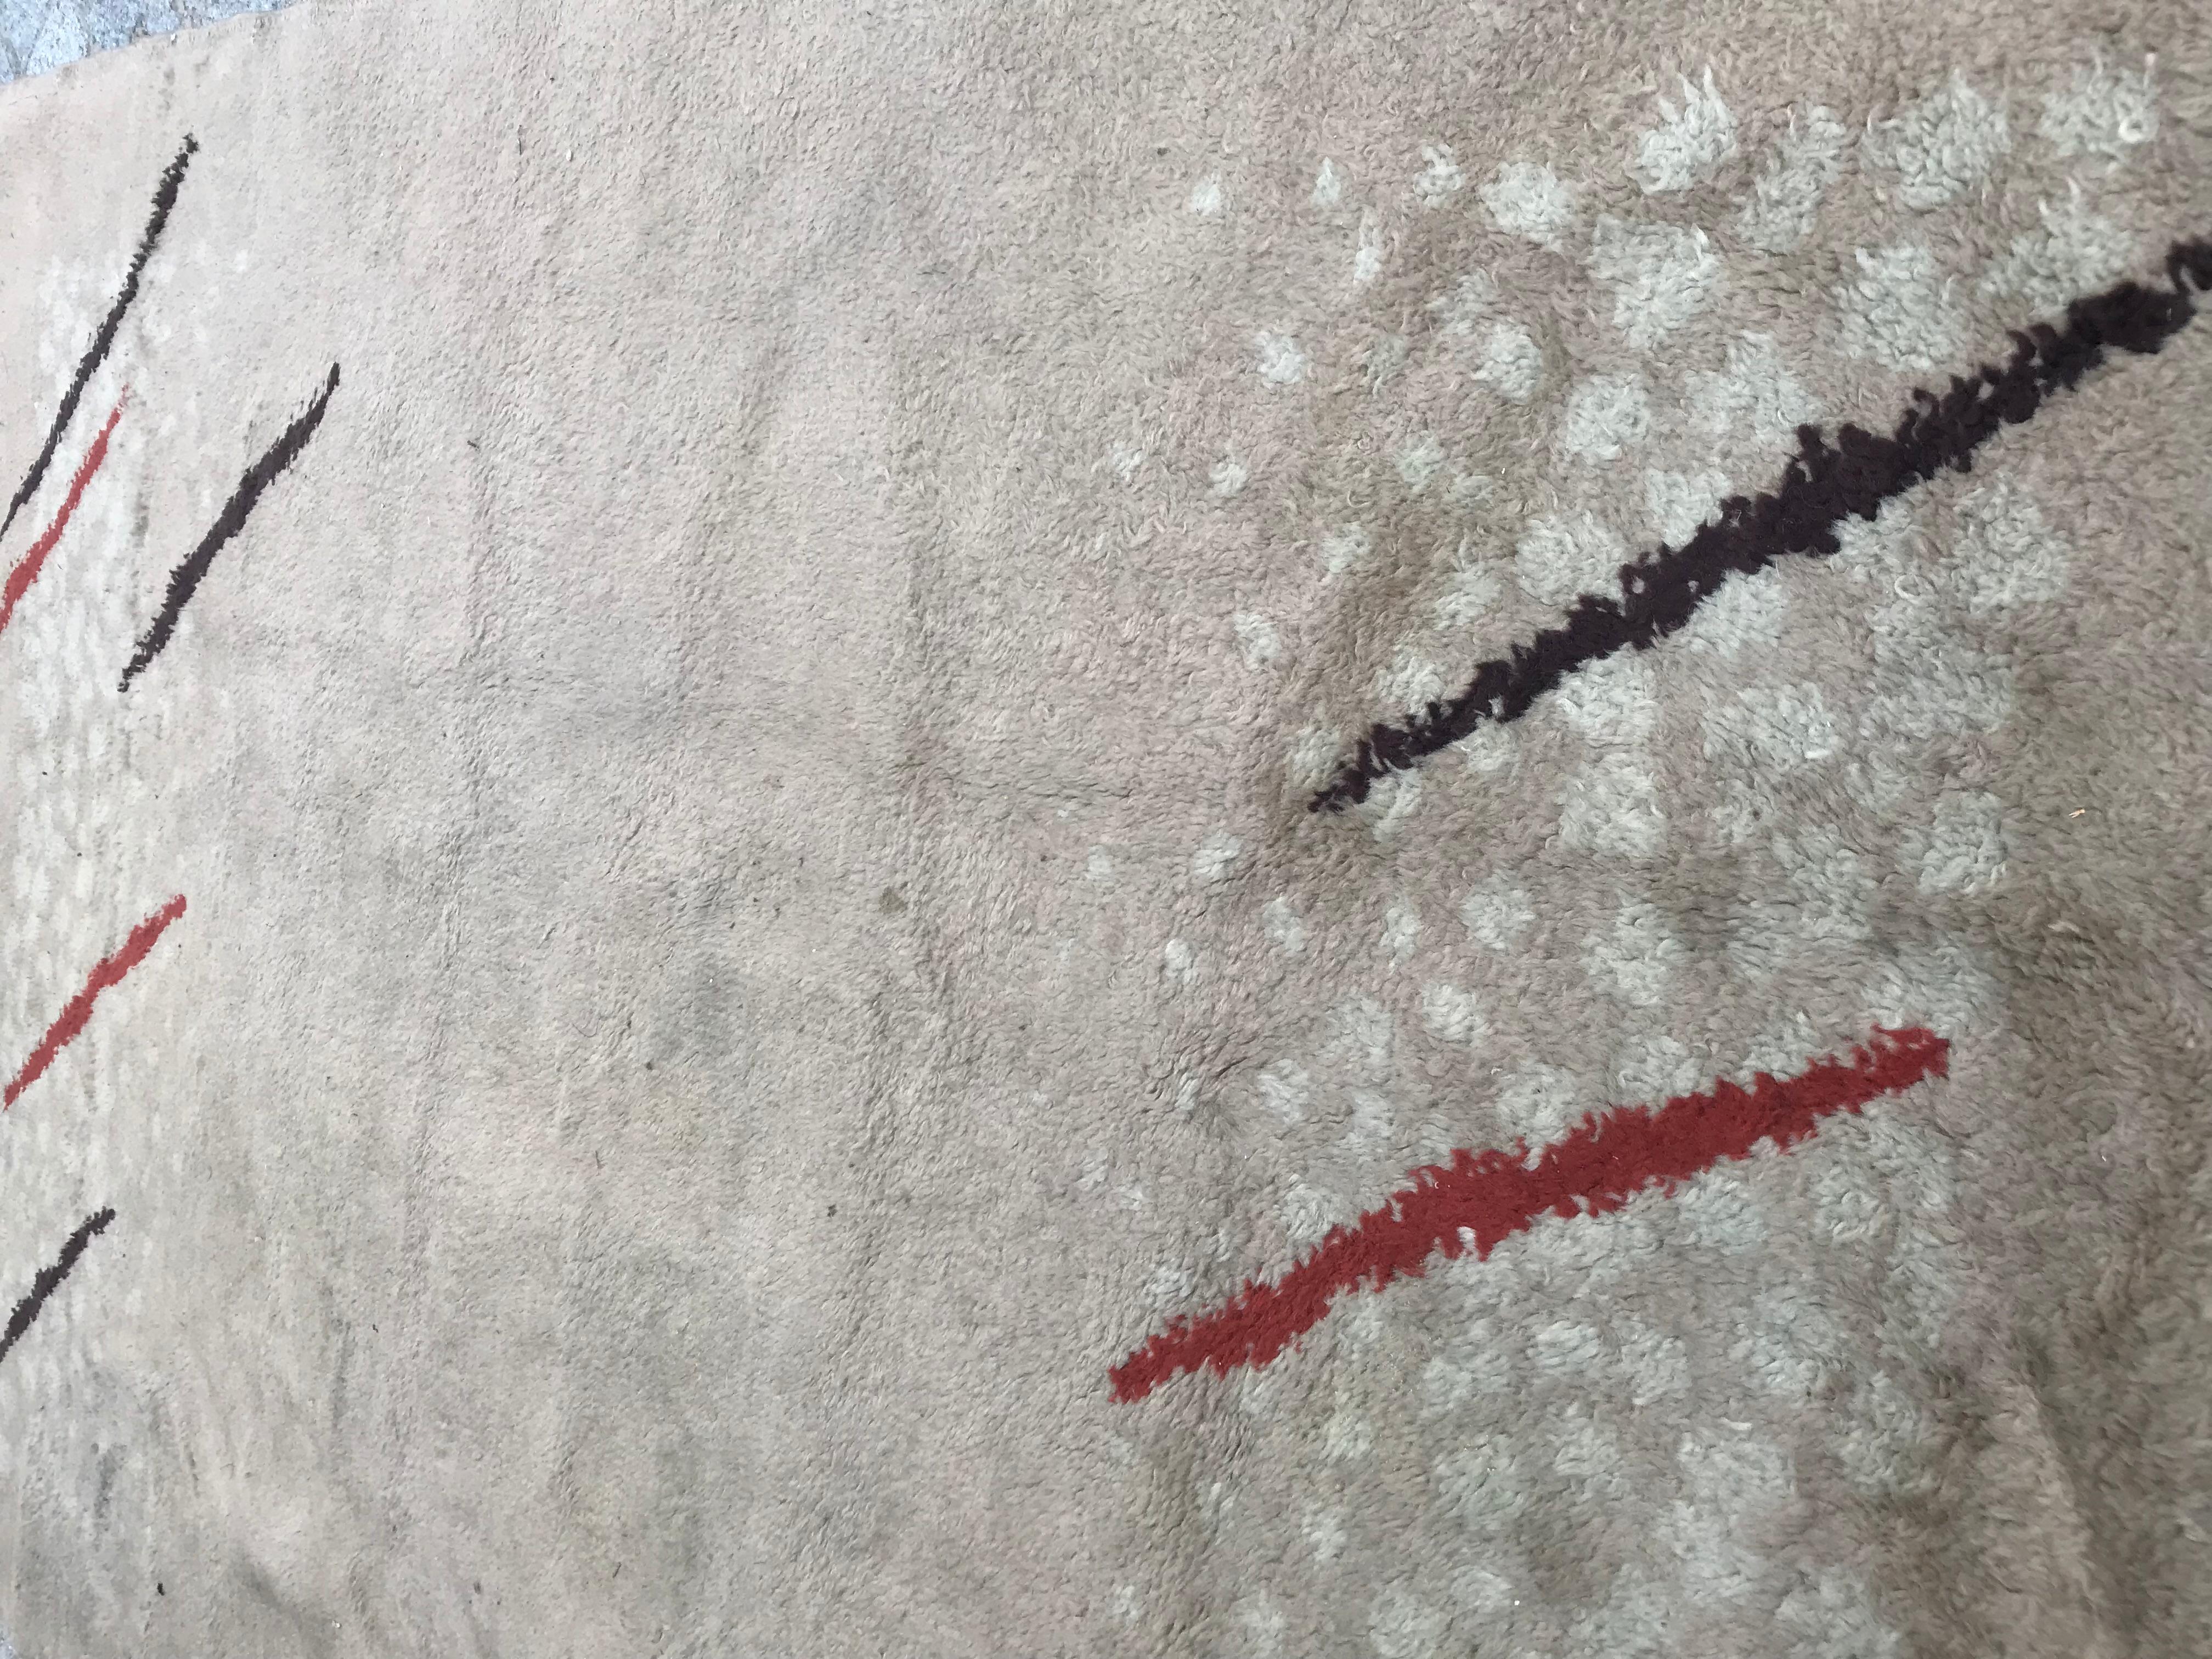 Schöner Marokko Art Deco Teppich aus den 1930er Jahren, unbekannter Designer, geometrische Muster und helle Farben mit Beige, Rot und Braun, komplett handgeknüpft mit Wollsamt auf Baumwollbasis.

✨✨✨
